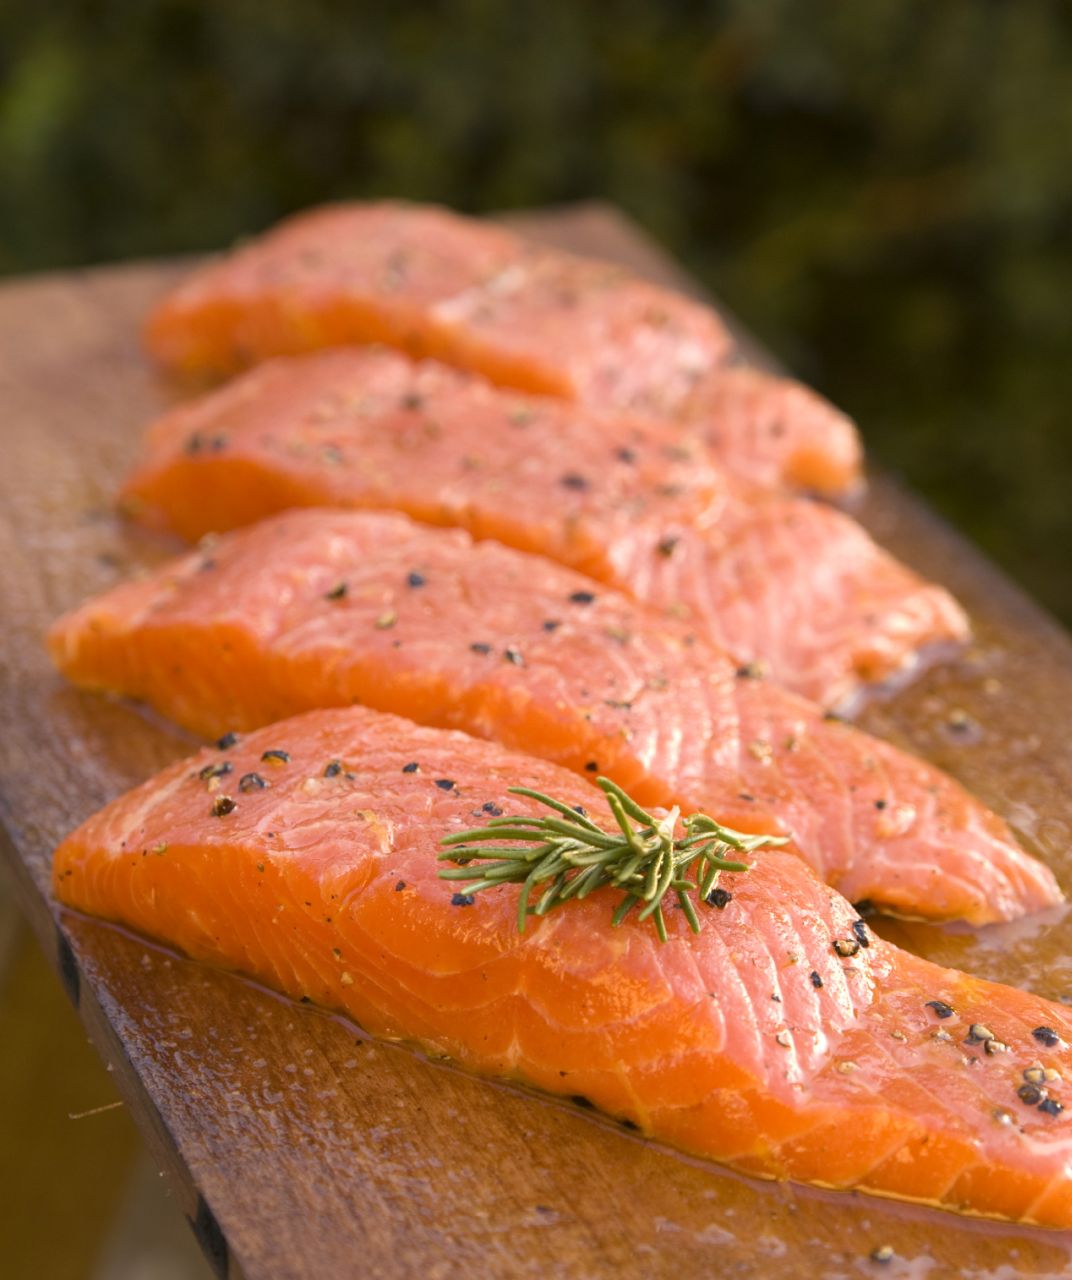 Zdrowe odżywianie - korzyści z jedzenia ryb